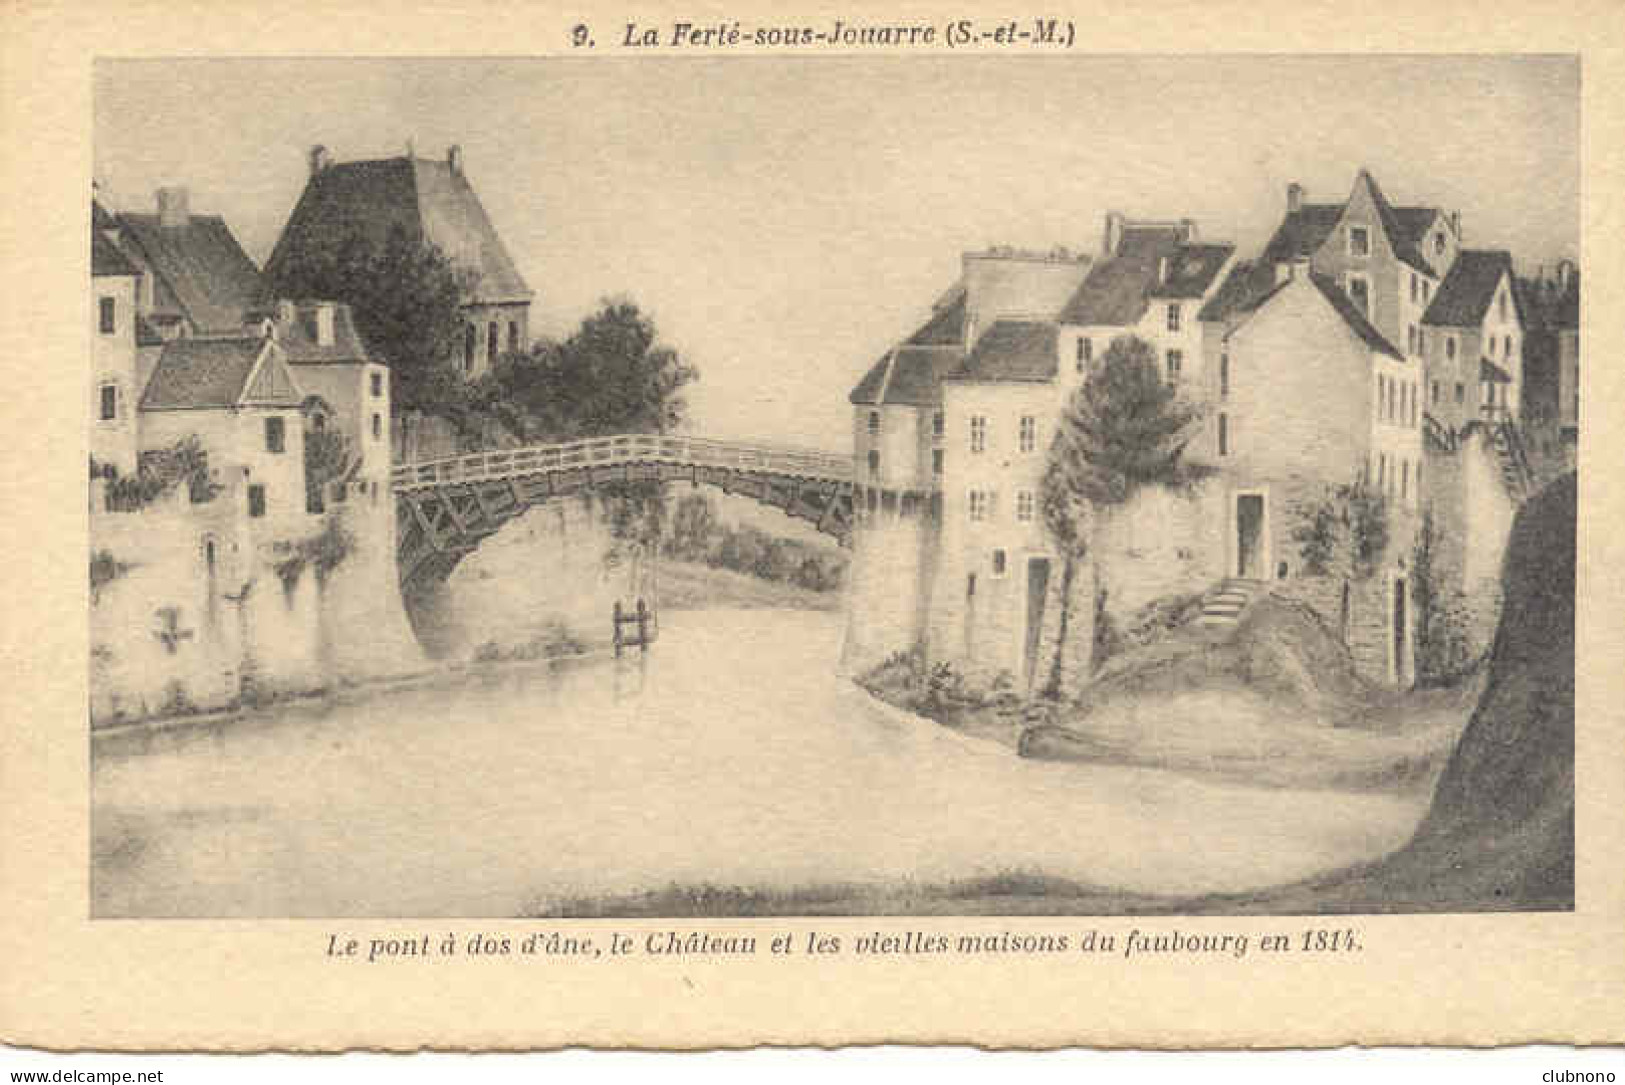 CPSM - FERTE/JOUARRE - LE PONT, LE CHATEAU ET LES VIELLES MAISONS EN 1814 (TRES BEAU DESSIN) - La Ferte Sous Jouarre